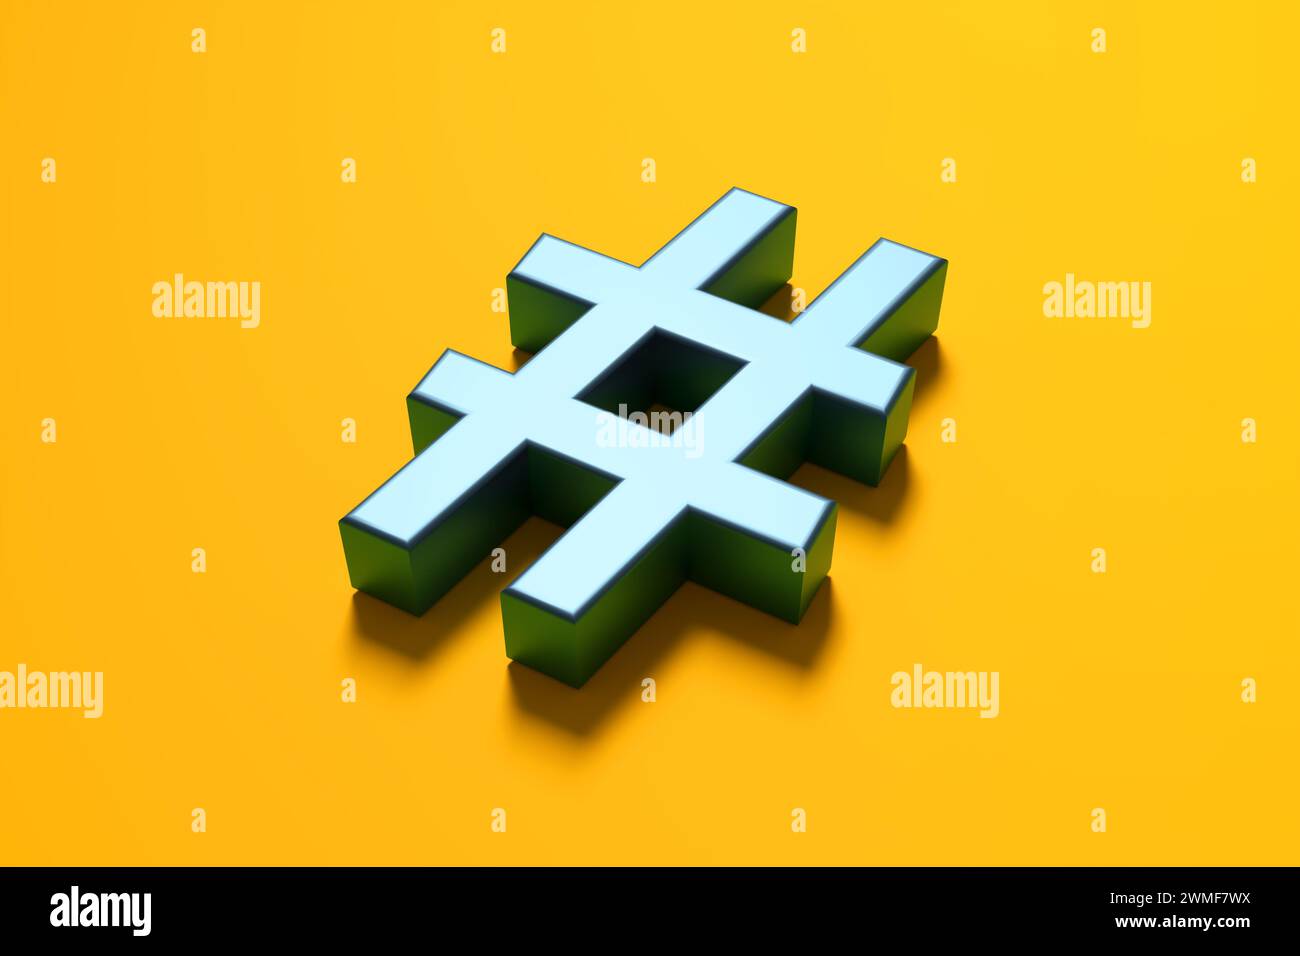 Symbole de hashtag bleu métallique sur fond jaune. Concept de balisage des métadonnées de communication en ligne et de médias sociaux. Rendu 3D. Banque D'Images